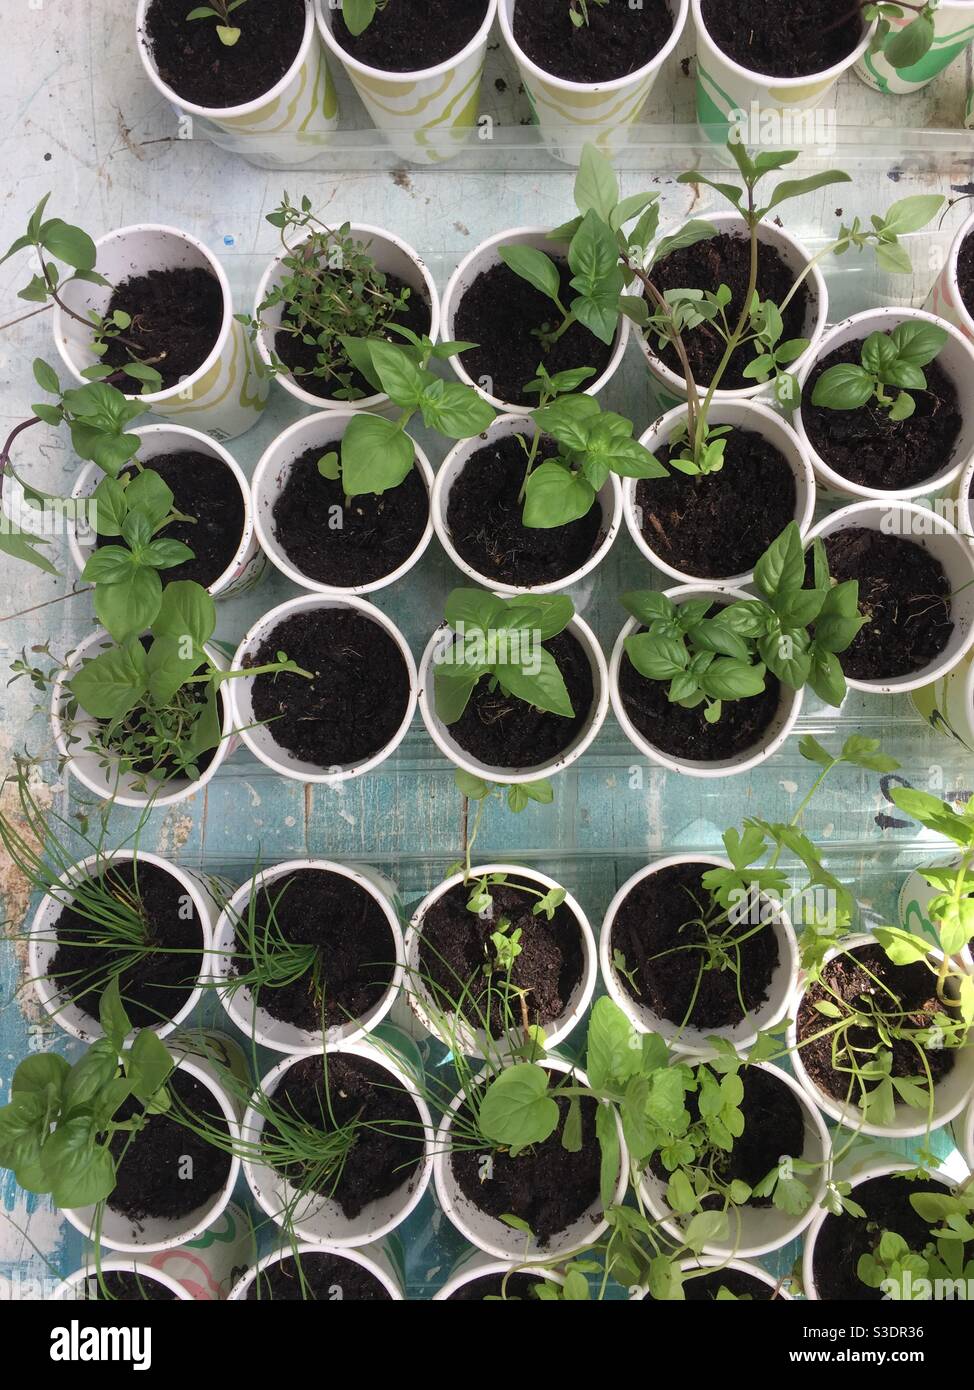 Neue Werke. Mehrere neue Kräuter werden in weiße biologisch abbaubare Tassen gepflanzt. Tabelle voller neuer Pflanzen. Kräuter in Pappbechern. Grün Stockfoto